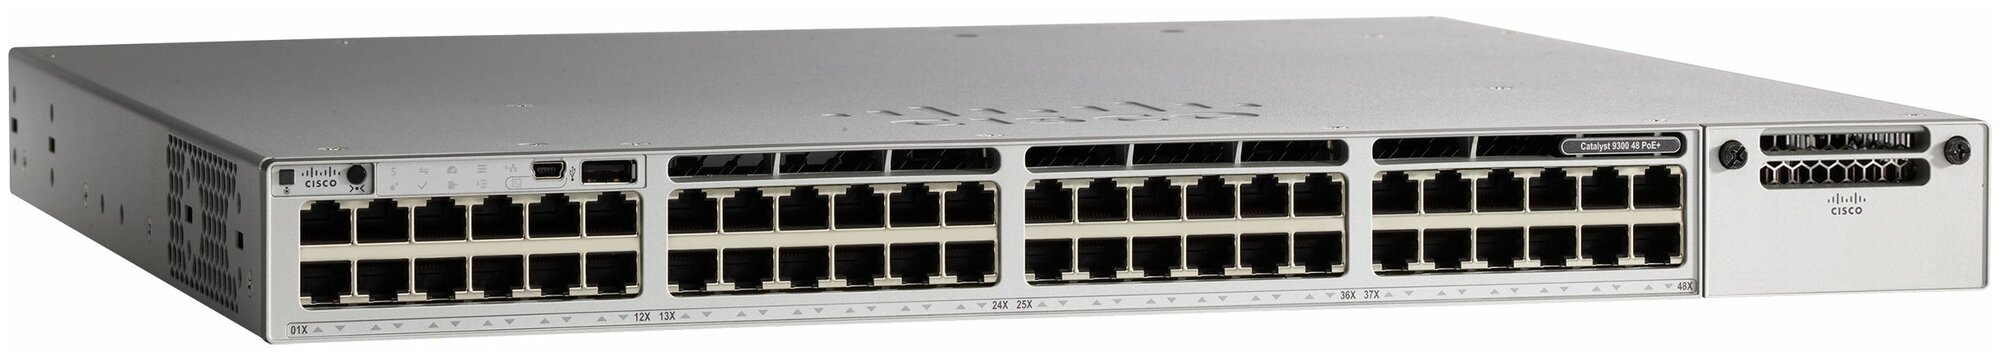 Коммутатор управляемый Cisco Catalyst C9300-48P-E (48 порта 10/100/1000 Мбит/сек + PoE)